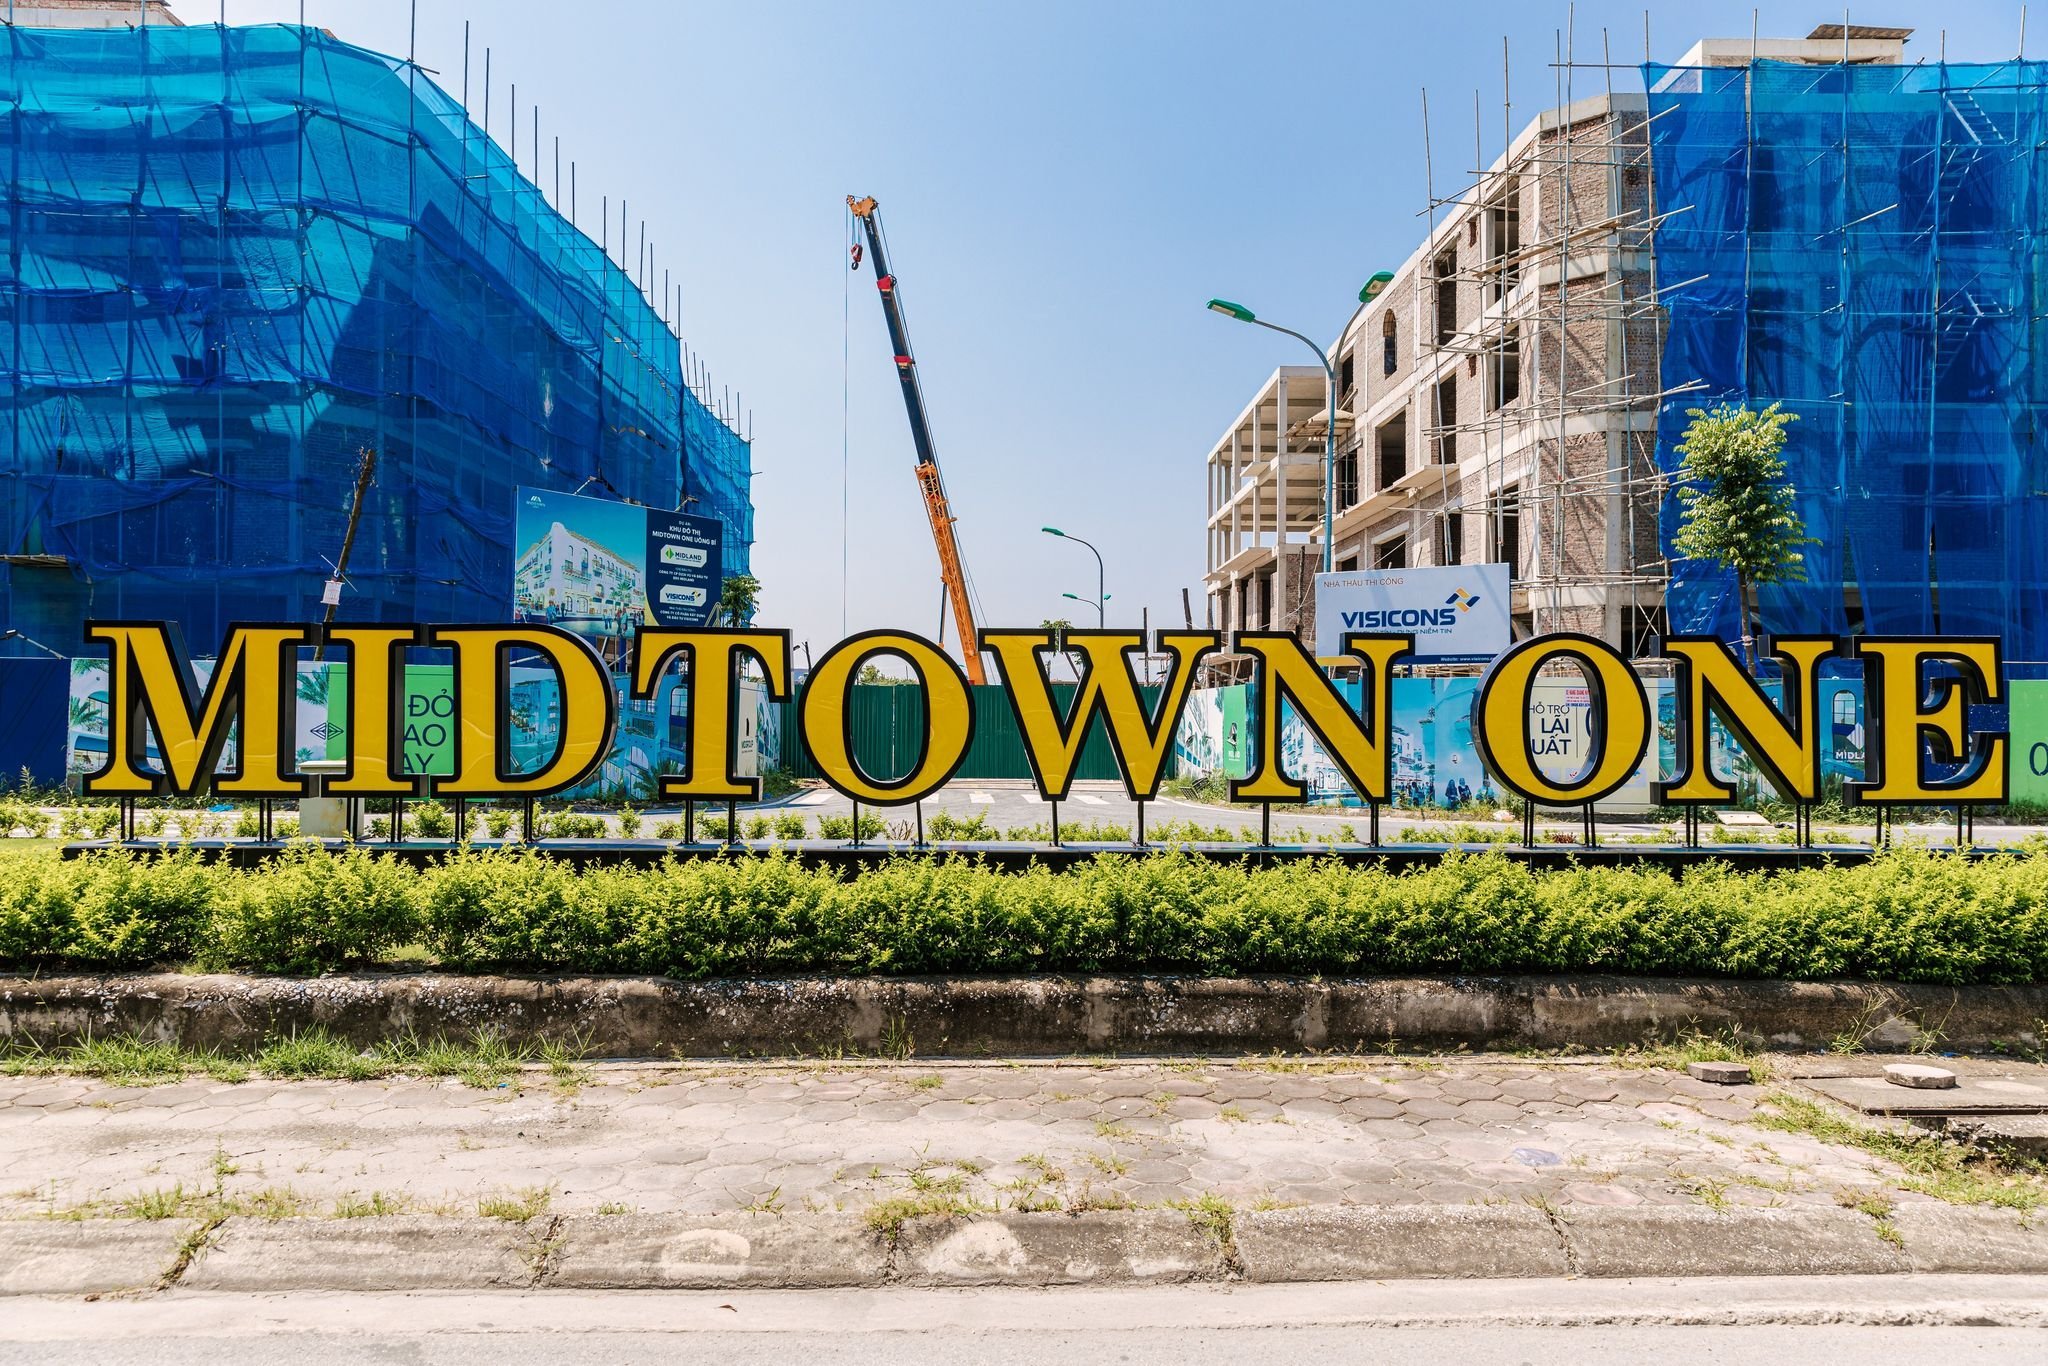 CHÍNH CHỦ bán nhanh căn nhà nghỉ khách sạn xây 5 tầng mặt đường 60m, thành phố Uông Bí - Quảng Ninh 3